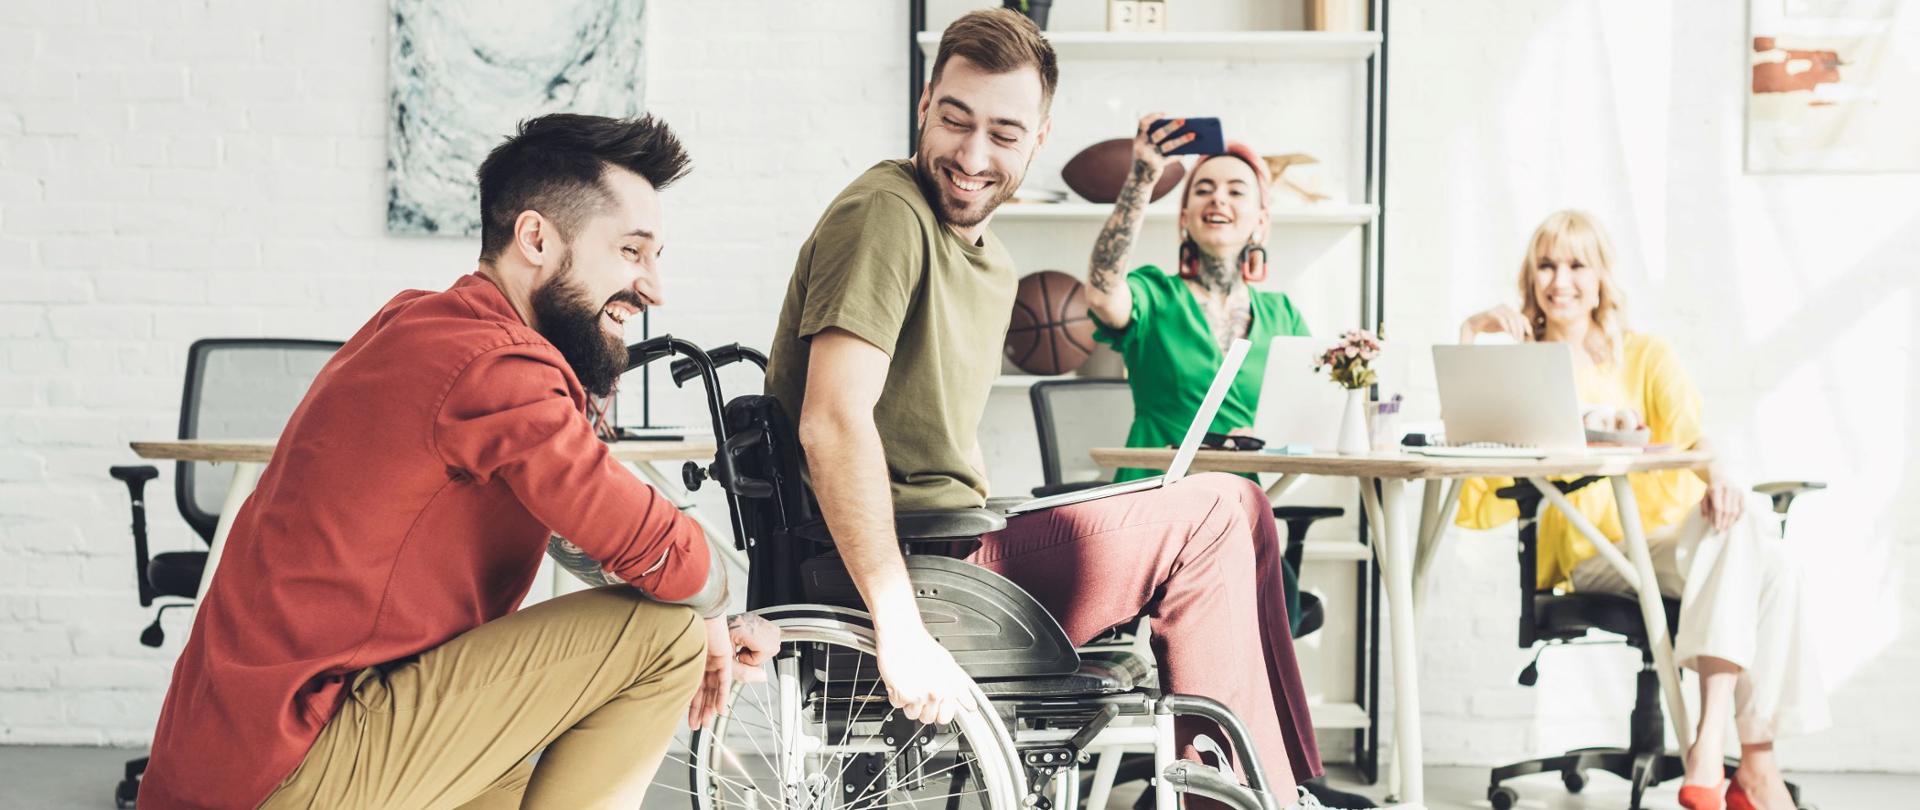 Zdjęcie grupy młodych osób w biurze, jedna z nich siedzi na wózku inwalidzkim